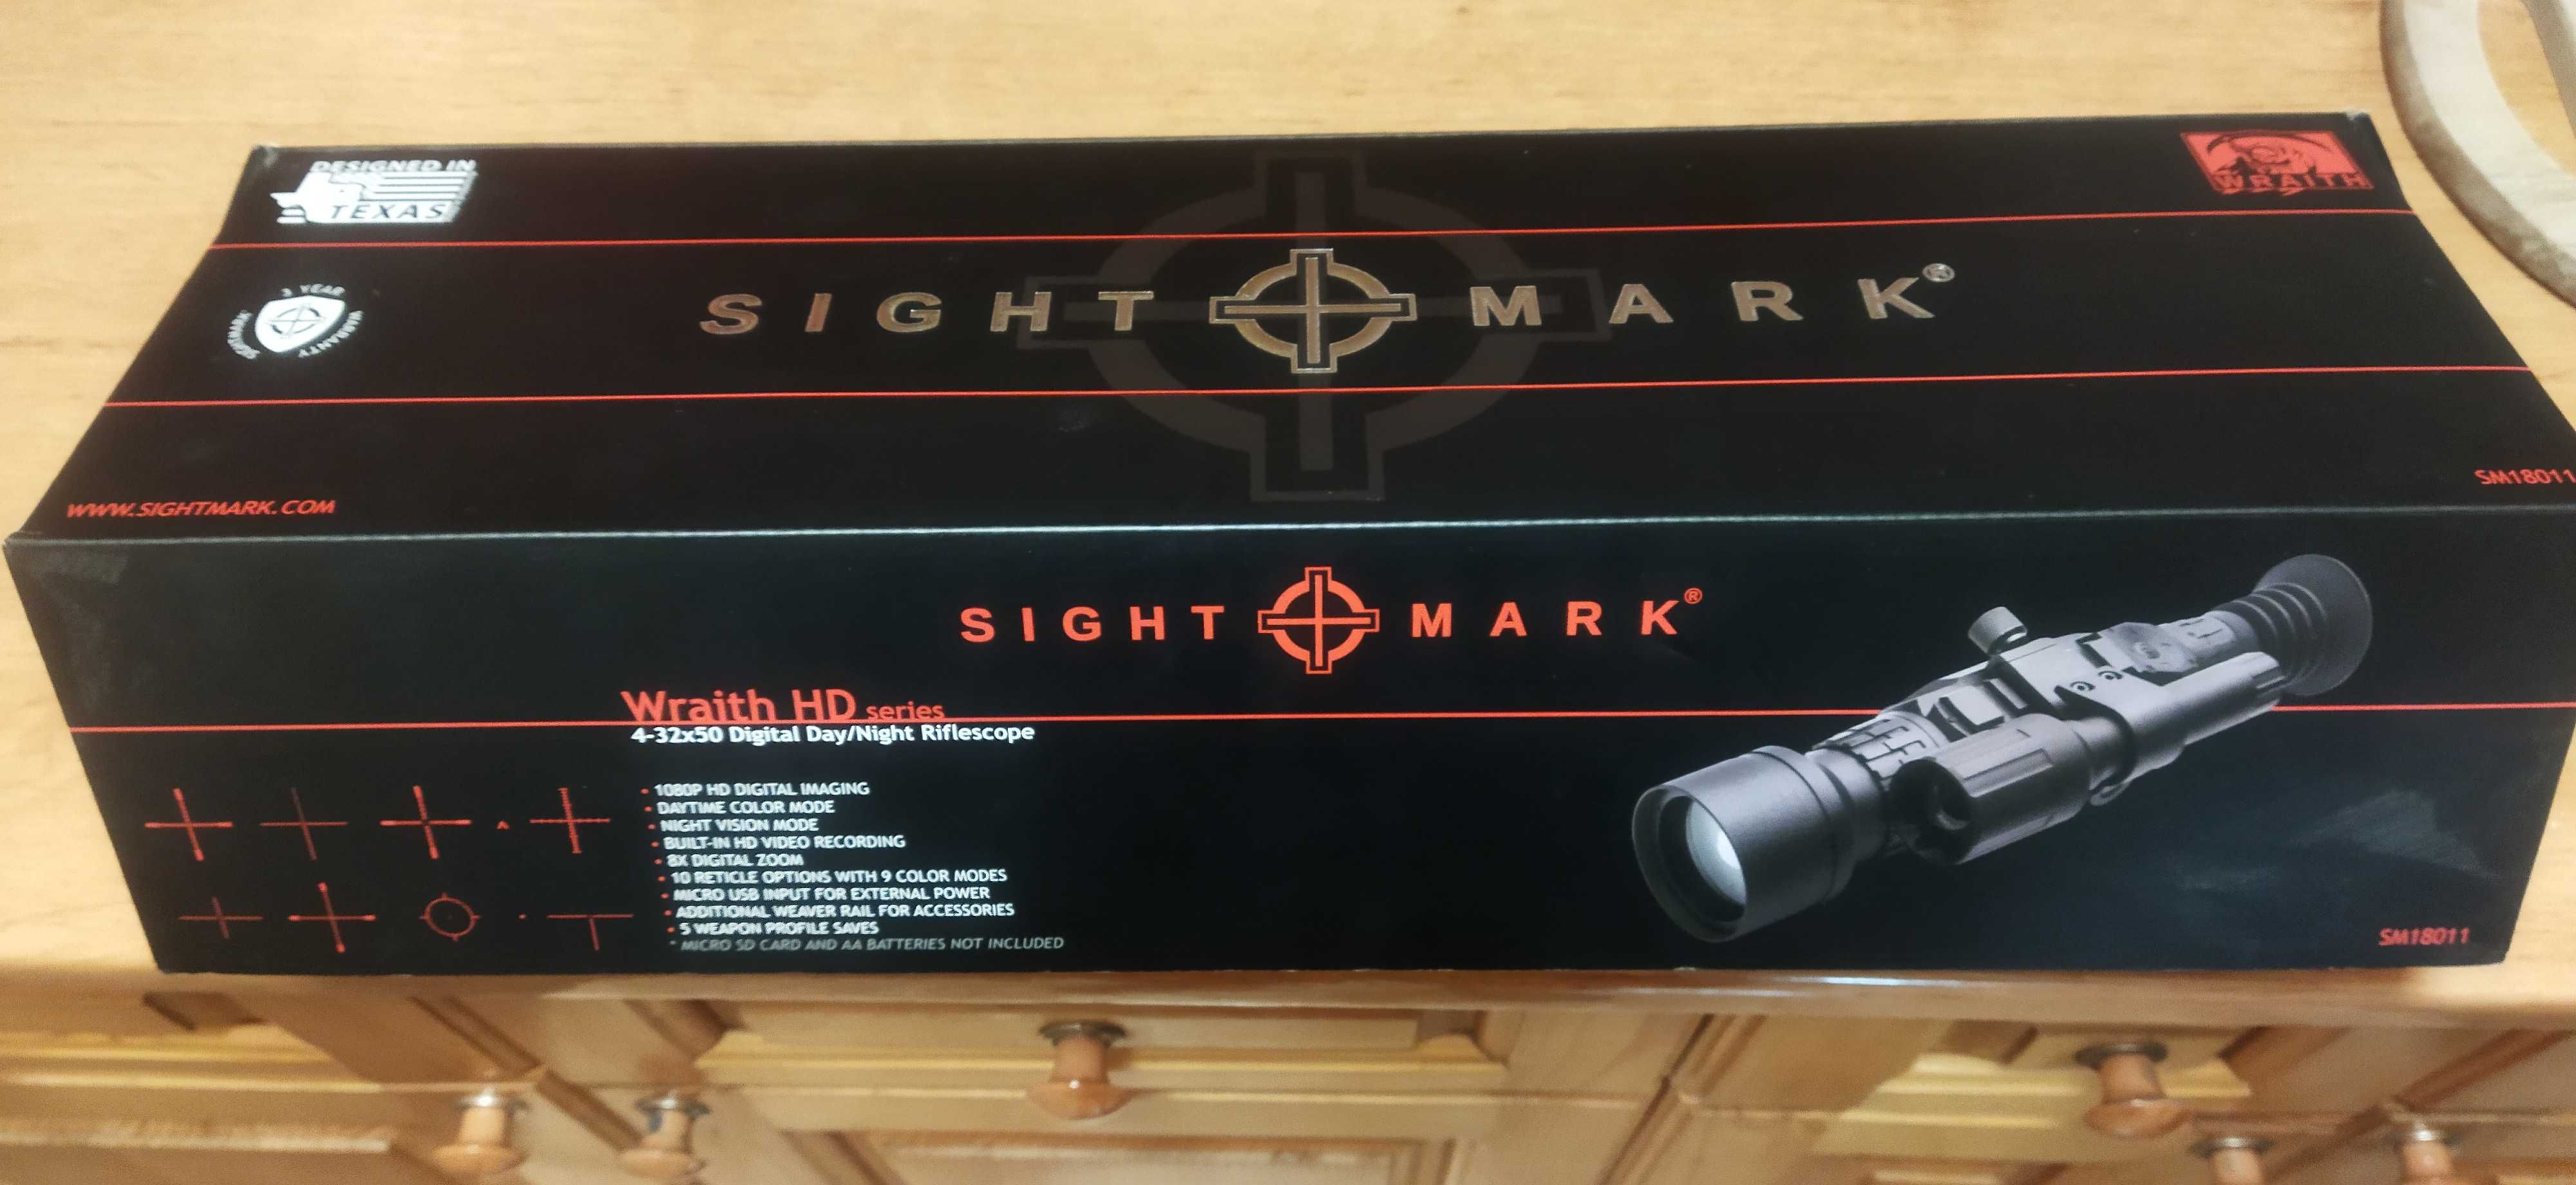 Оптика Sight Mark ден-нощ zoom 4-32